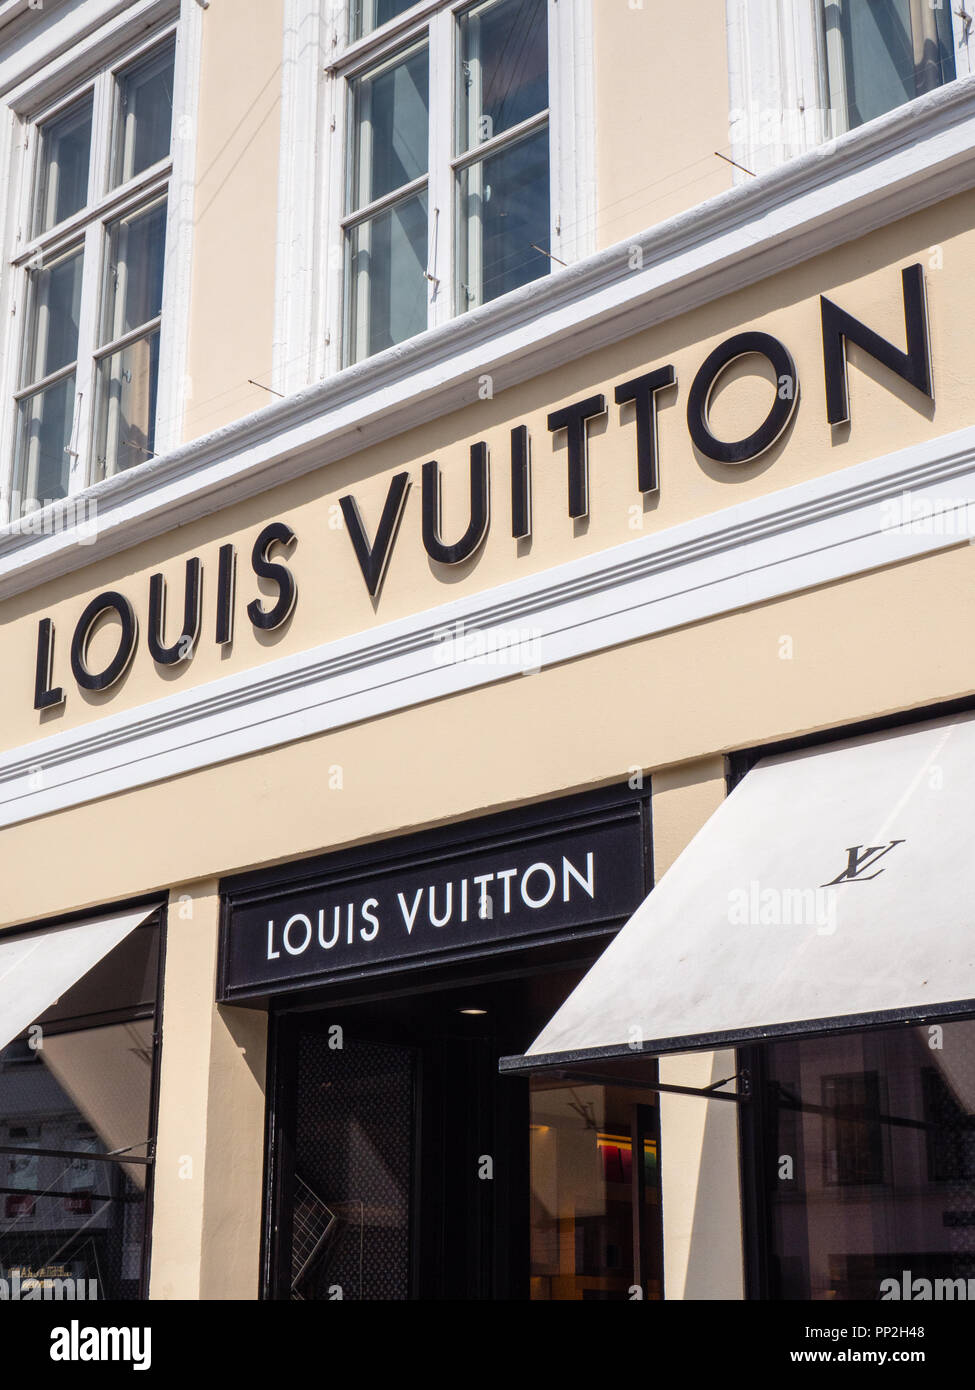 Louis Vuitton, Retail Store, Europe Stock Photo - Alamy